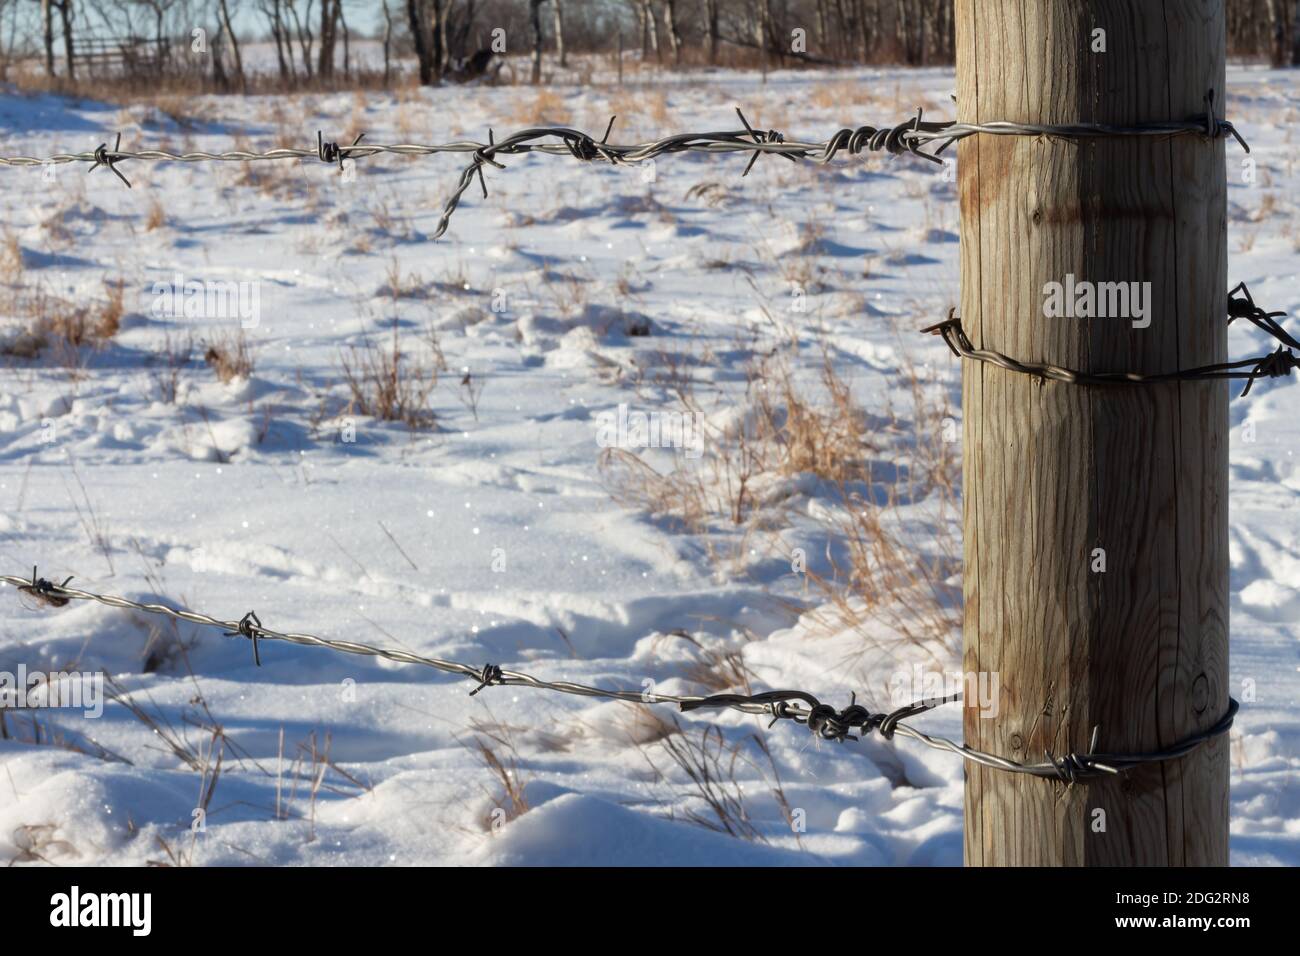 Verwitterte hölzerne Zaunpfosten mit Stacheldraht Zaun Linien im Winter Schneefeld Weide, Gräser und Schnee auf dem Boden Stockfoto